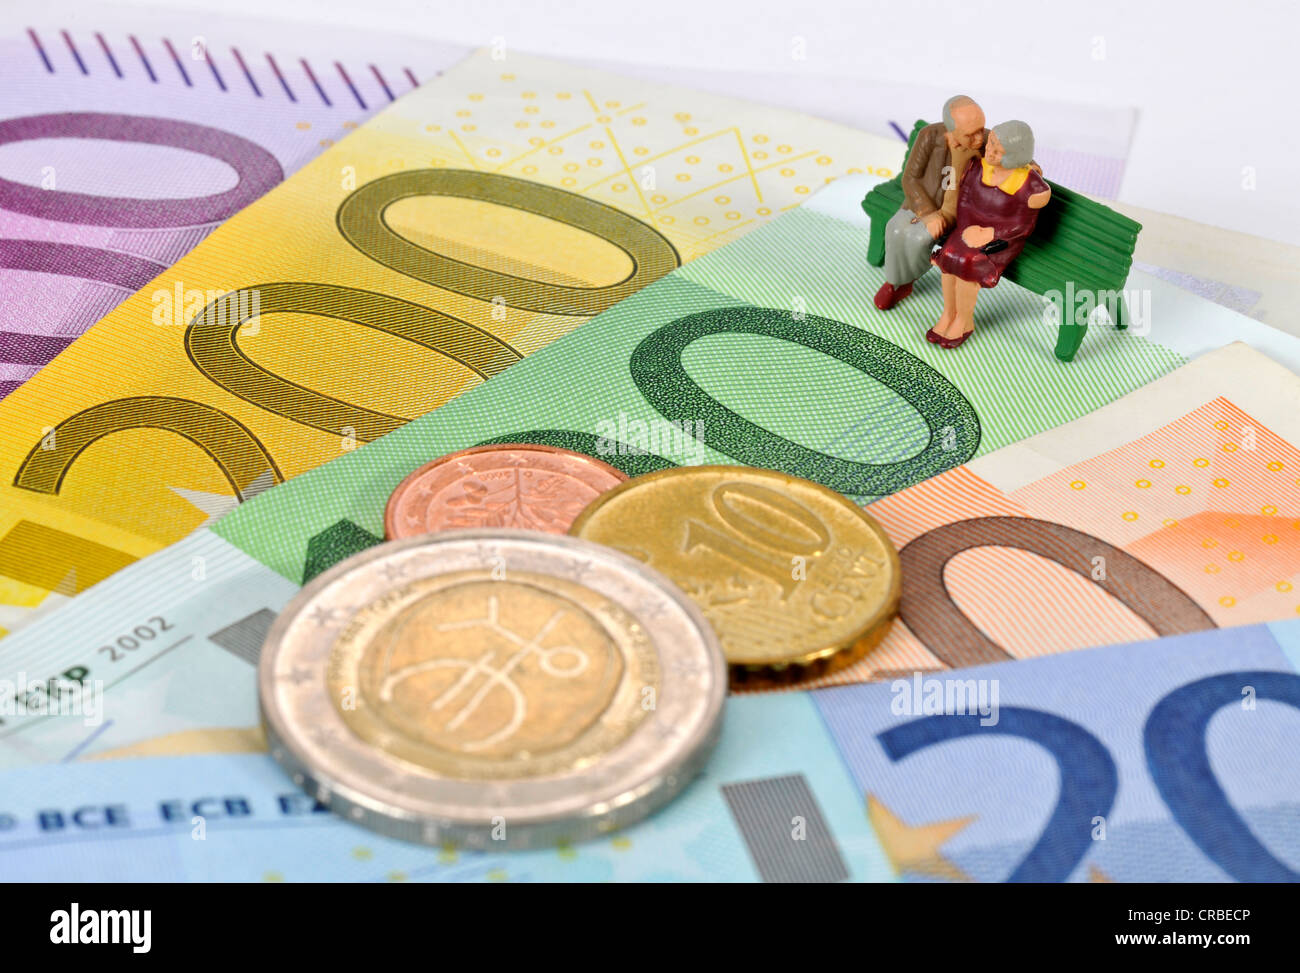 Miniatur-Figuren von einem Ehepaar im Ruhestand sitzt auf einer Parkbank auf Euro-Banknoten und Münzen, symbolisches Bild für den Ruhestand Stockfoto